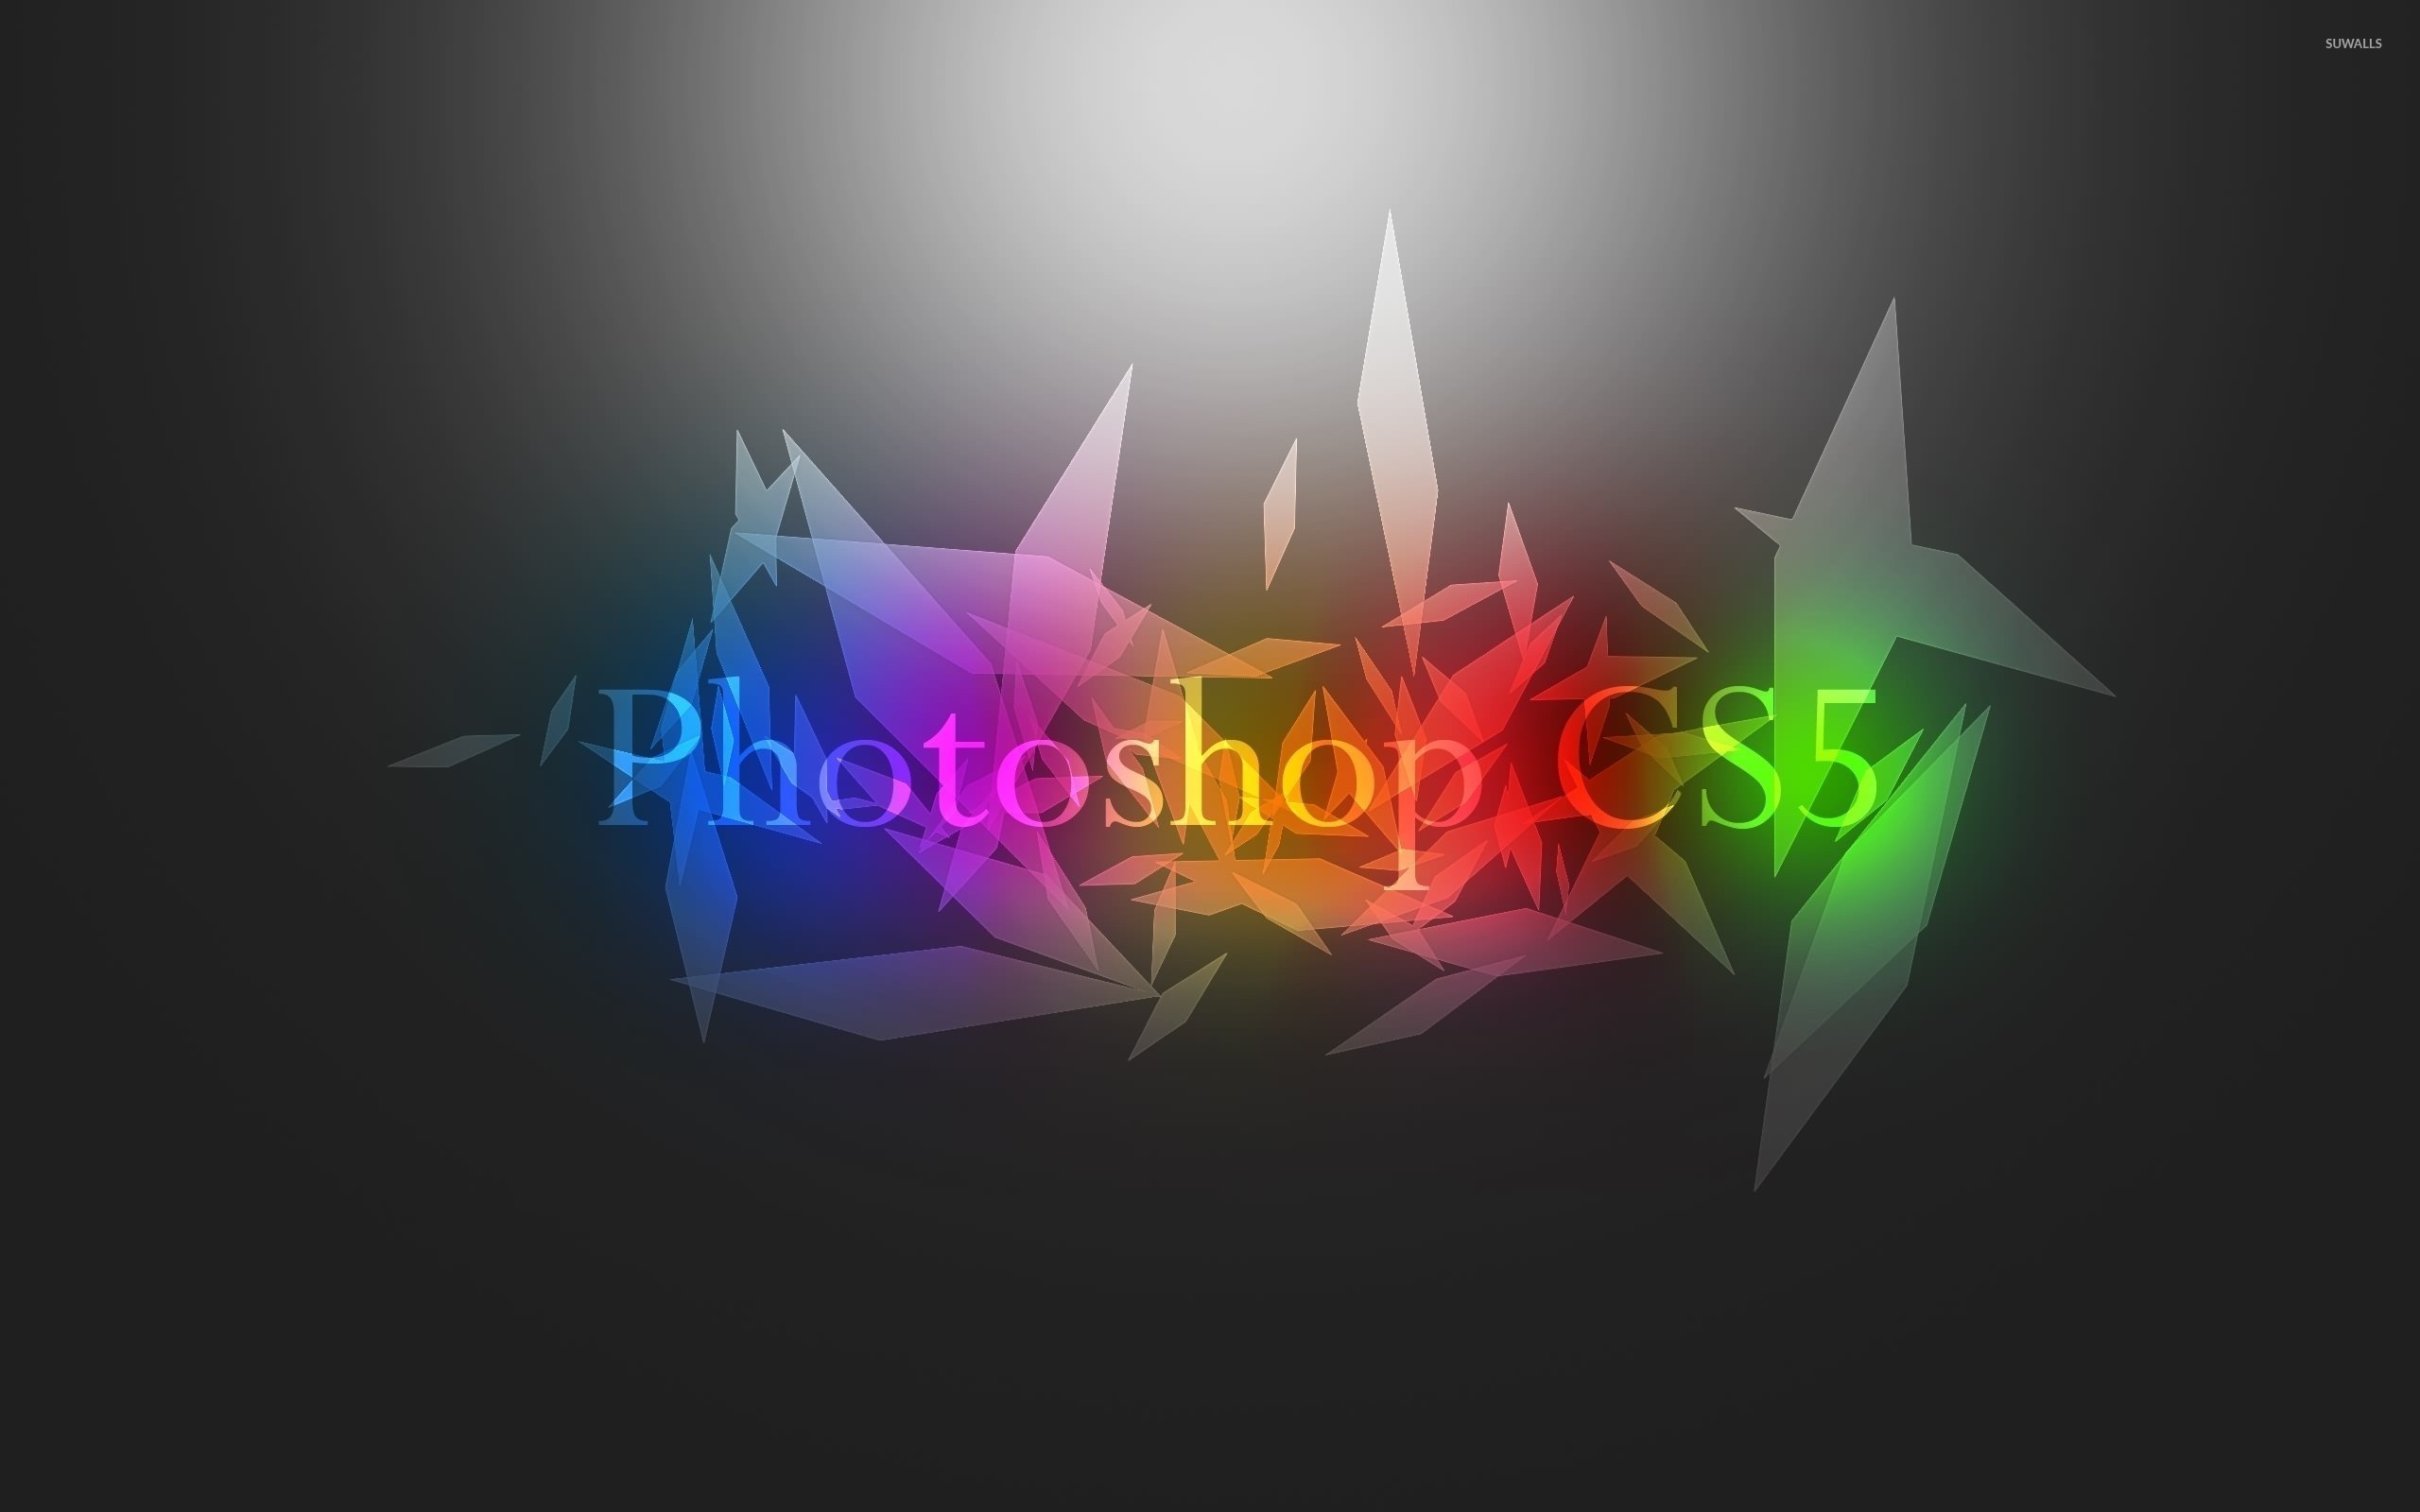 Photoshop CS5 бесплатно